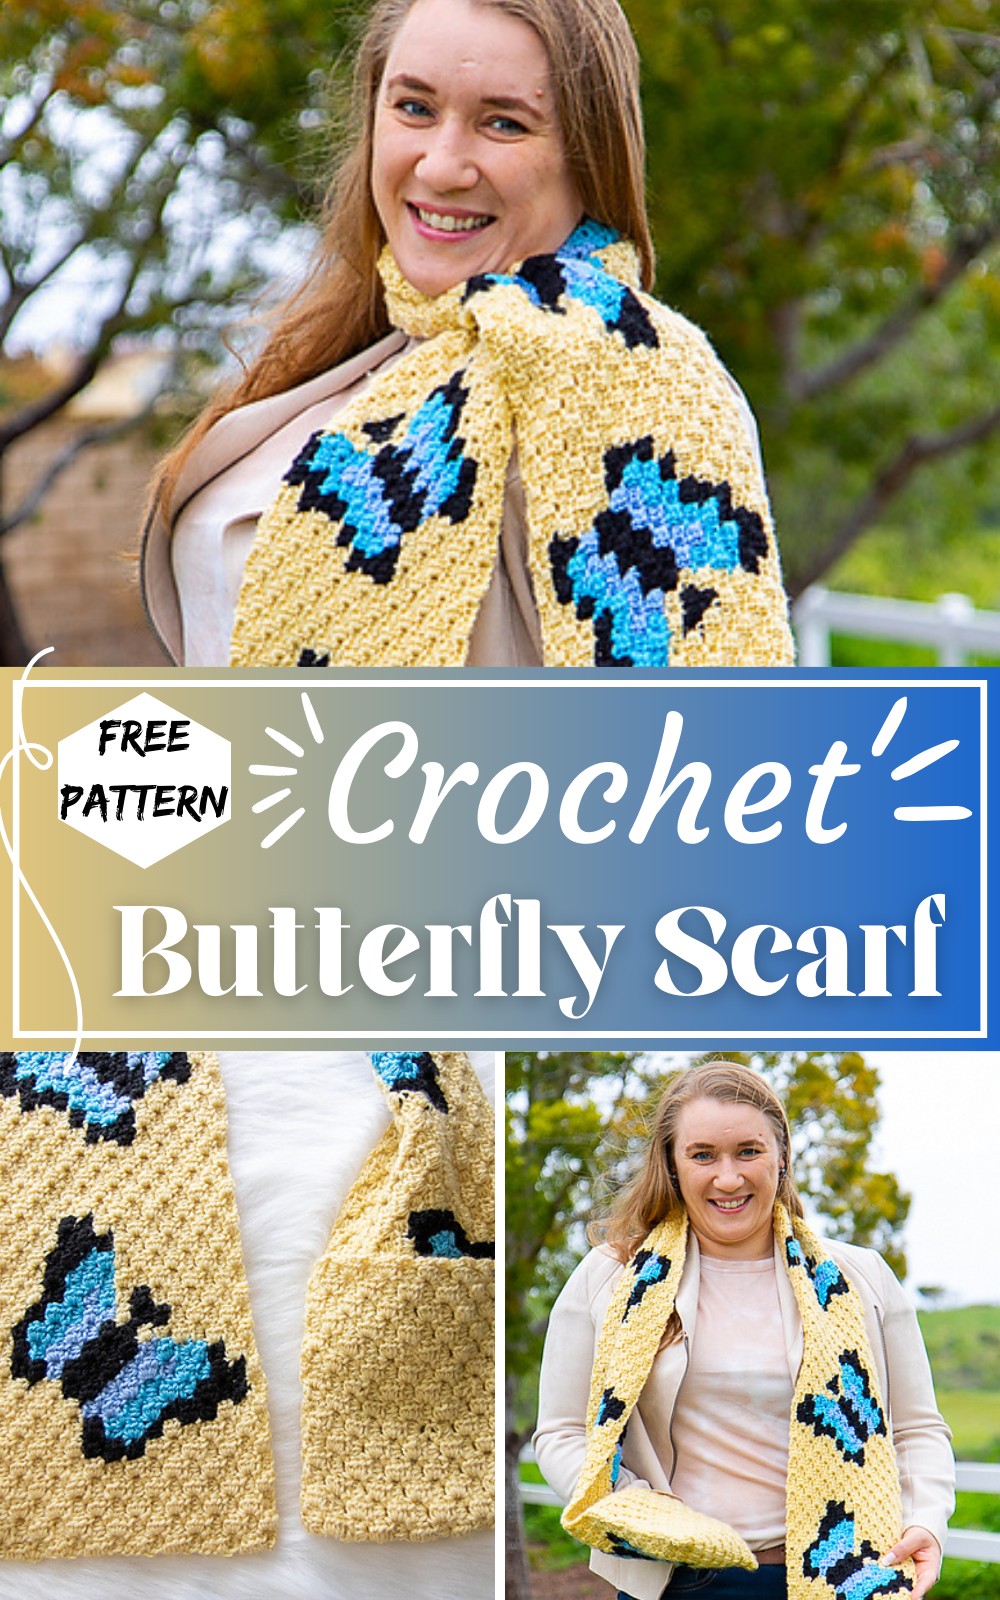 Crochet C2c Butterfly Scarf Pattern